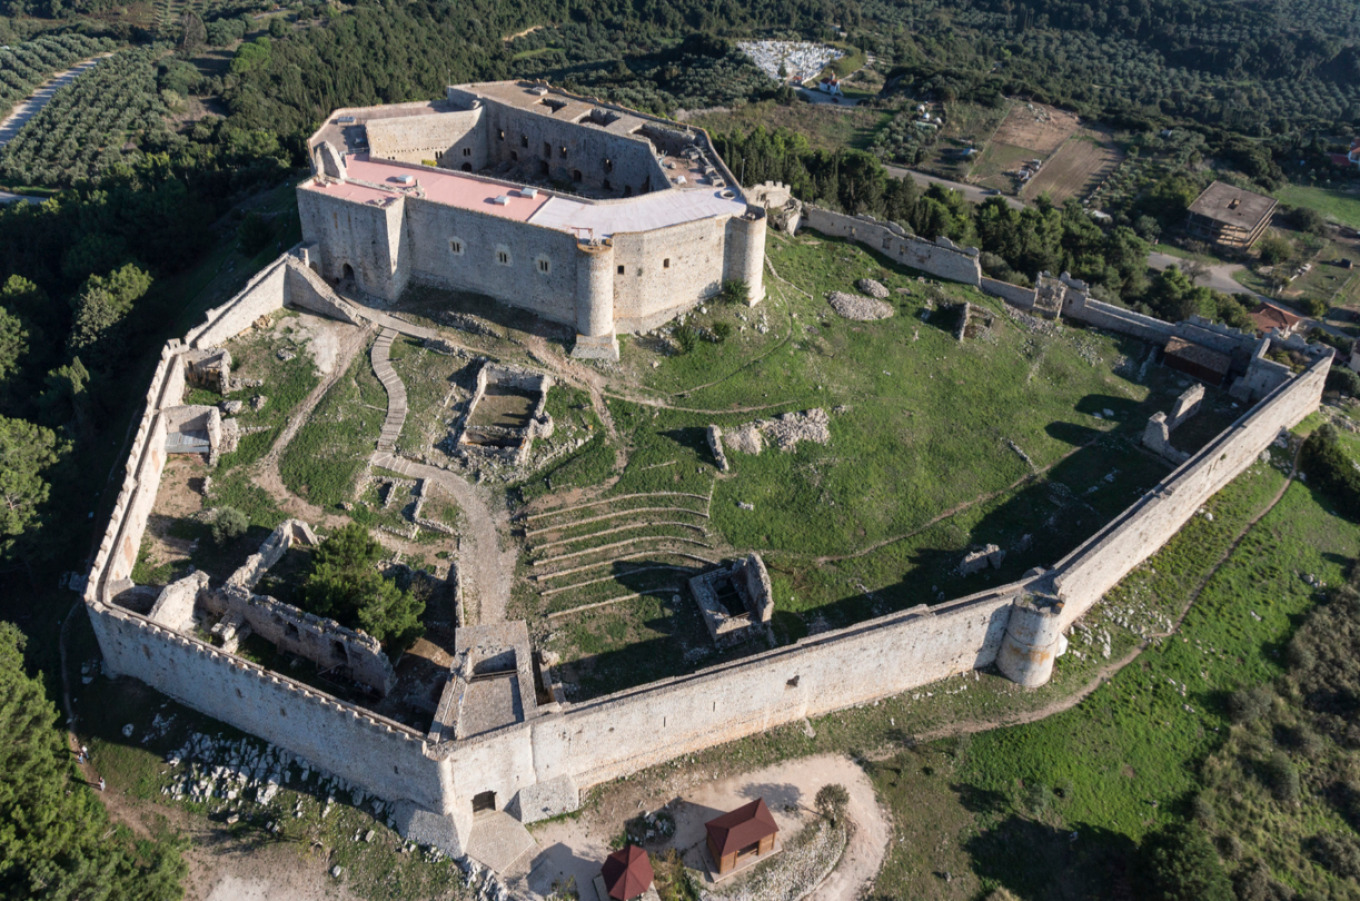 Ύπουργείο Πολιτισμού: Θωρακίζεται έναντι των πυρκαγιών ο αρχαιολογικός χώρος στο Kάστρο Χλεμούτσι στην Ηλεία